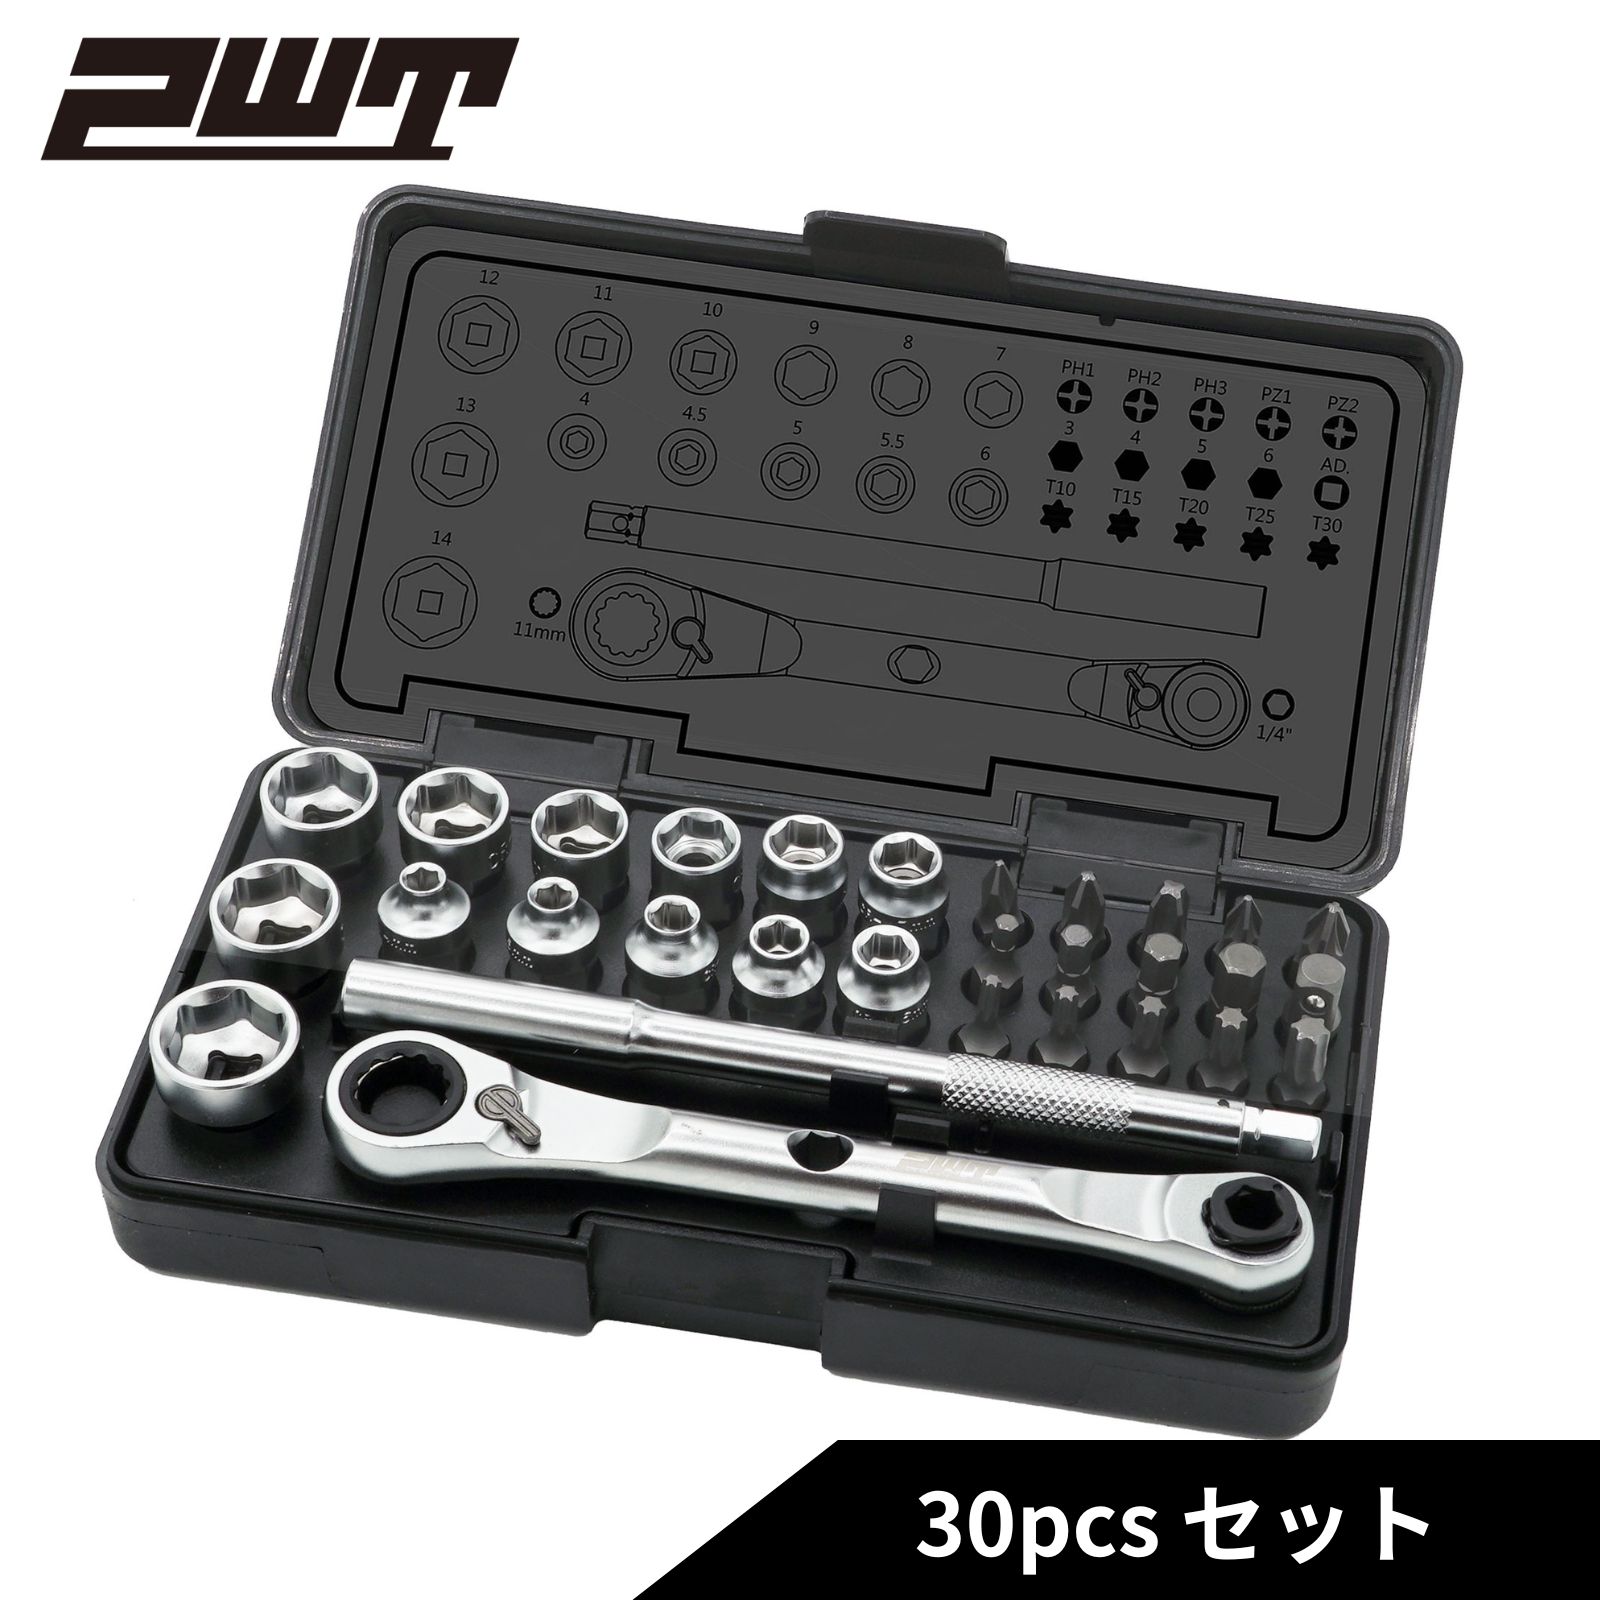 PWT ソケットセット ソケットレンチビットセット スーパーロープロファイル設計 6.35mm (1/4